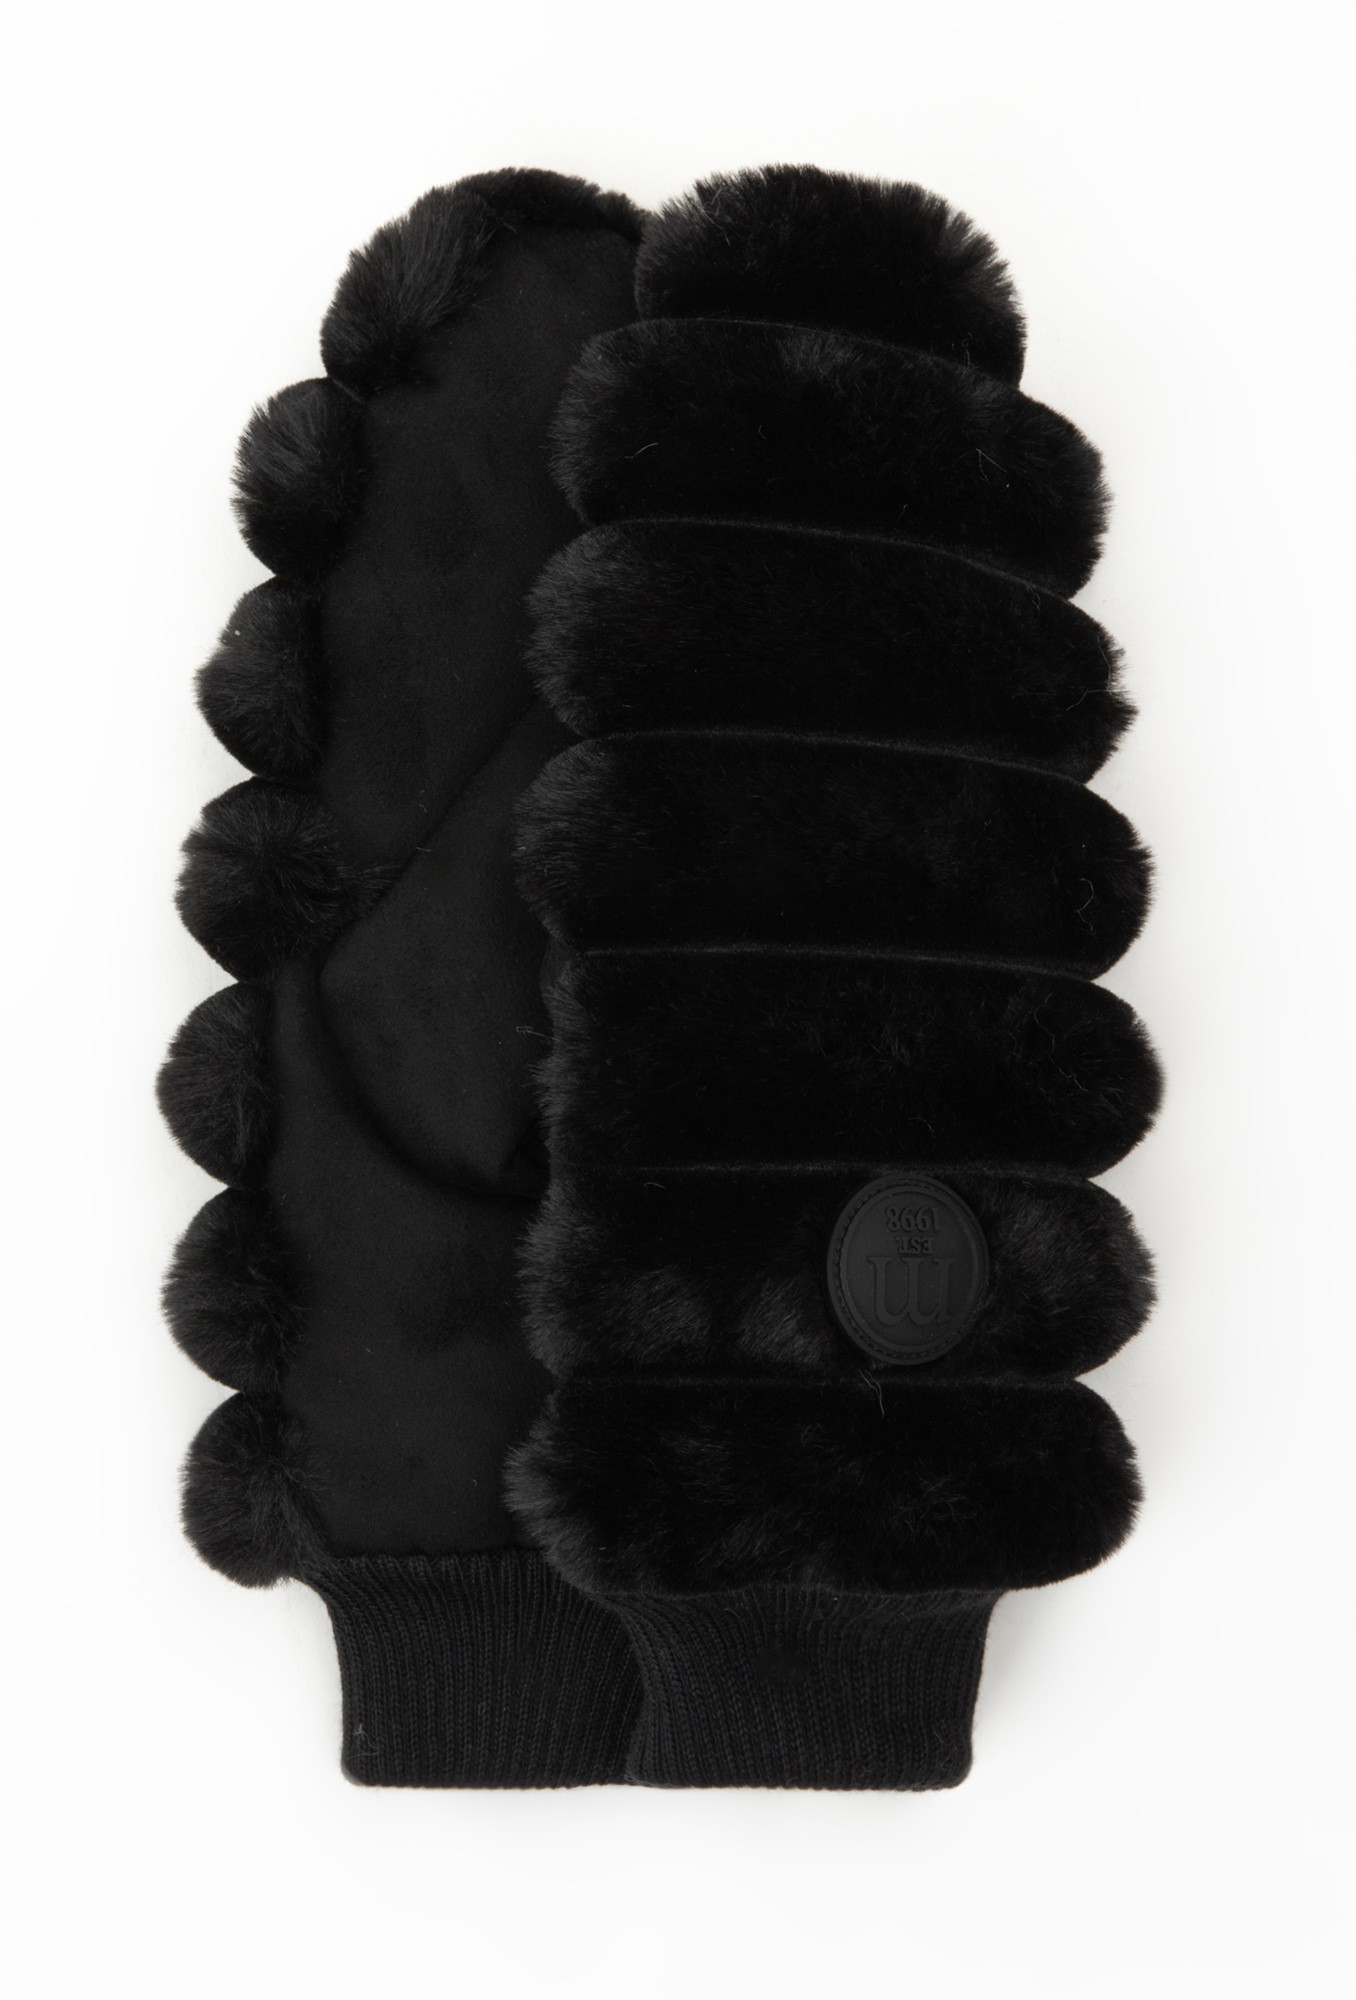 Rukavice palčáky Monnari s kožešinou černé L/XL